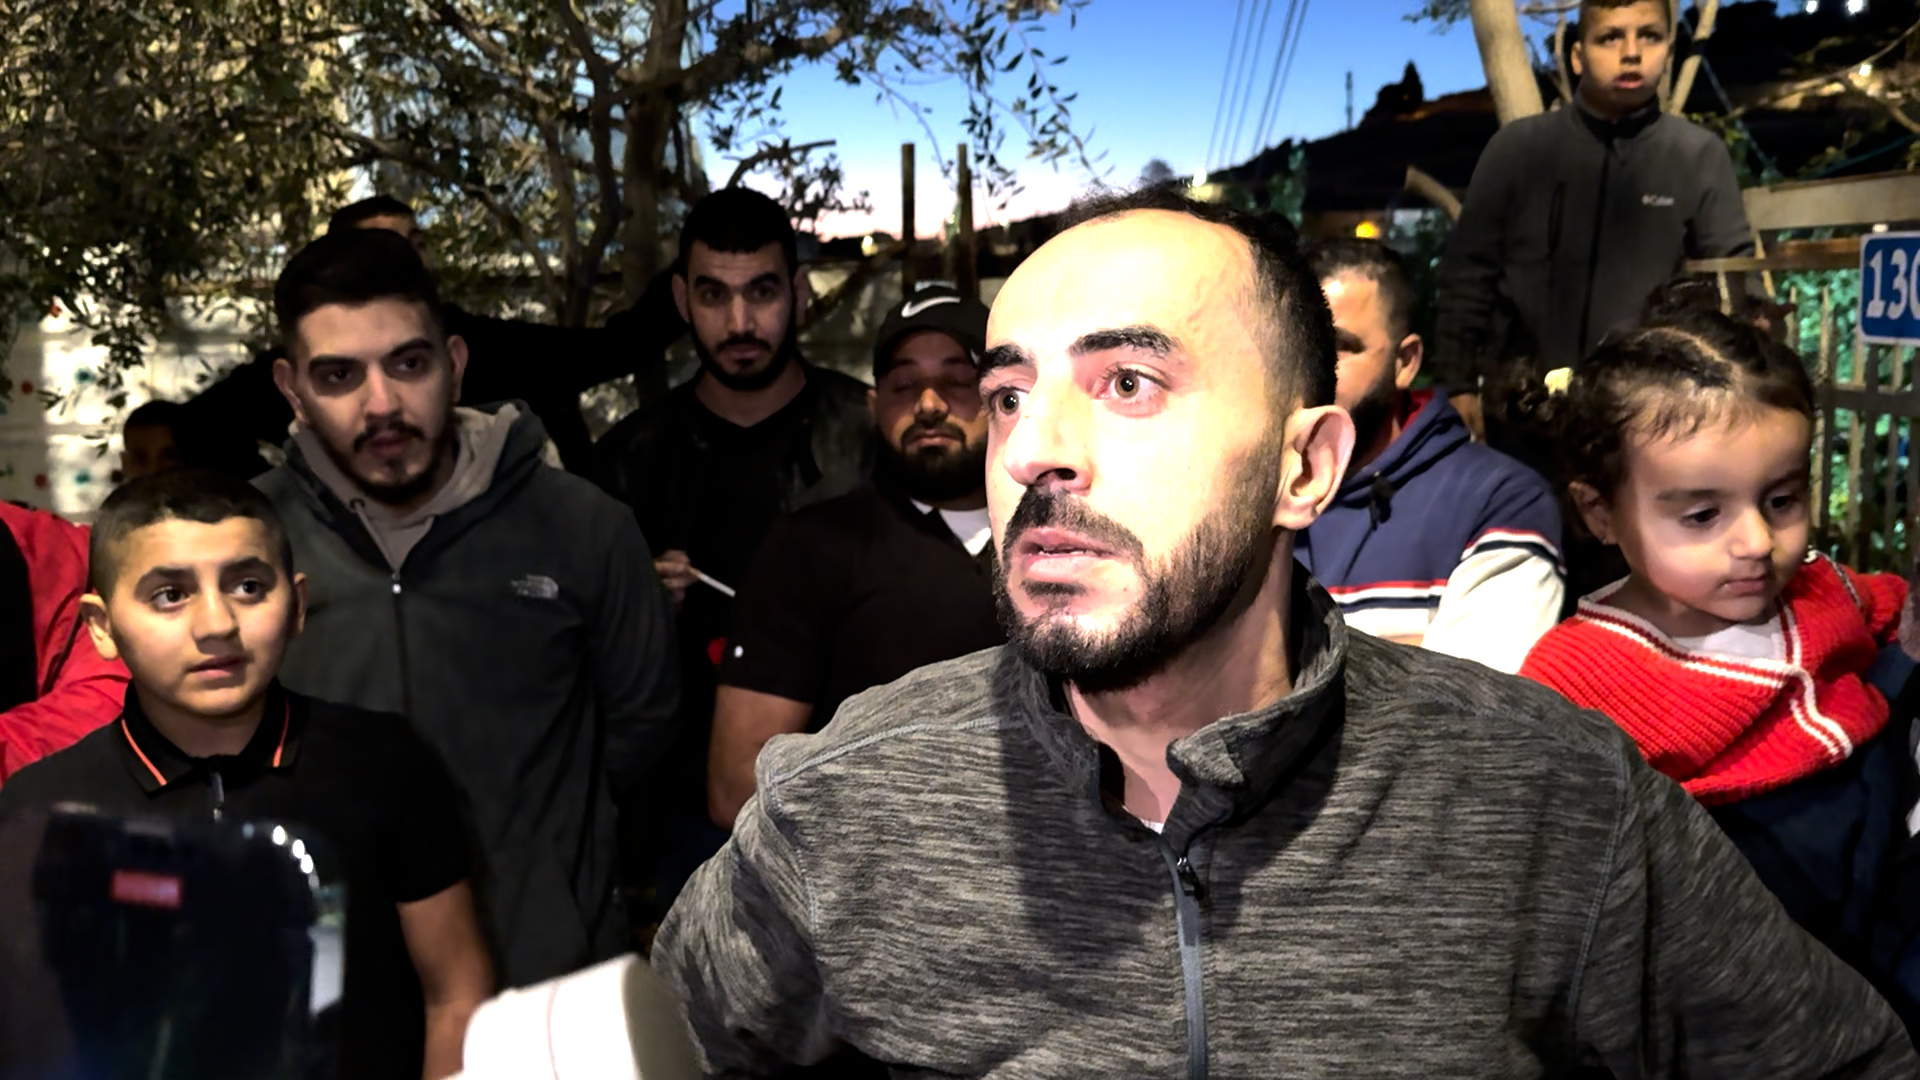 شاب مقدسي يكشف عن انتهاكات مروعة في سجن النقب | أخبار القدس – البوكس نيوز